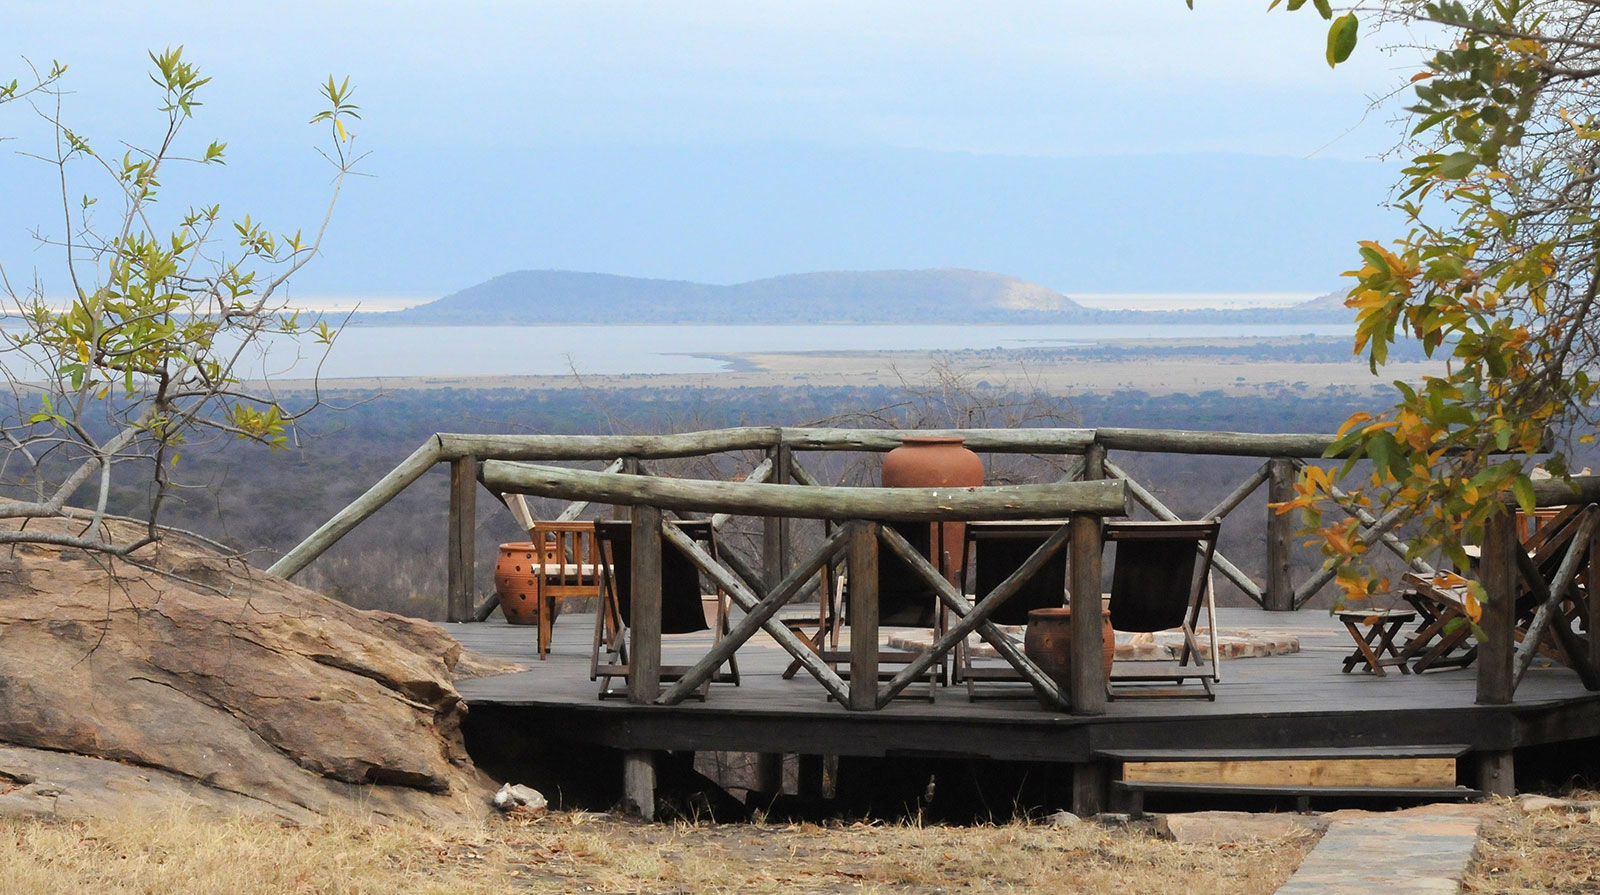 Maweninga Camp - Un hâvre de paix
